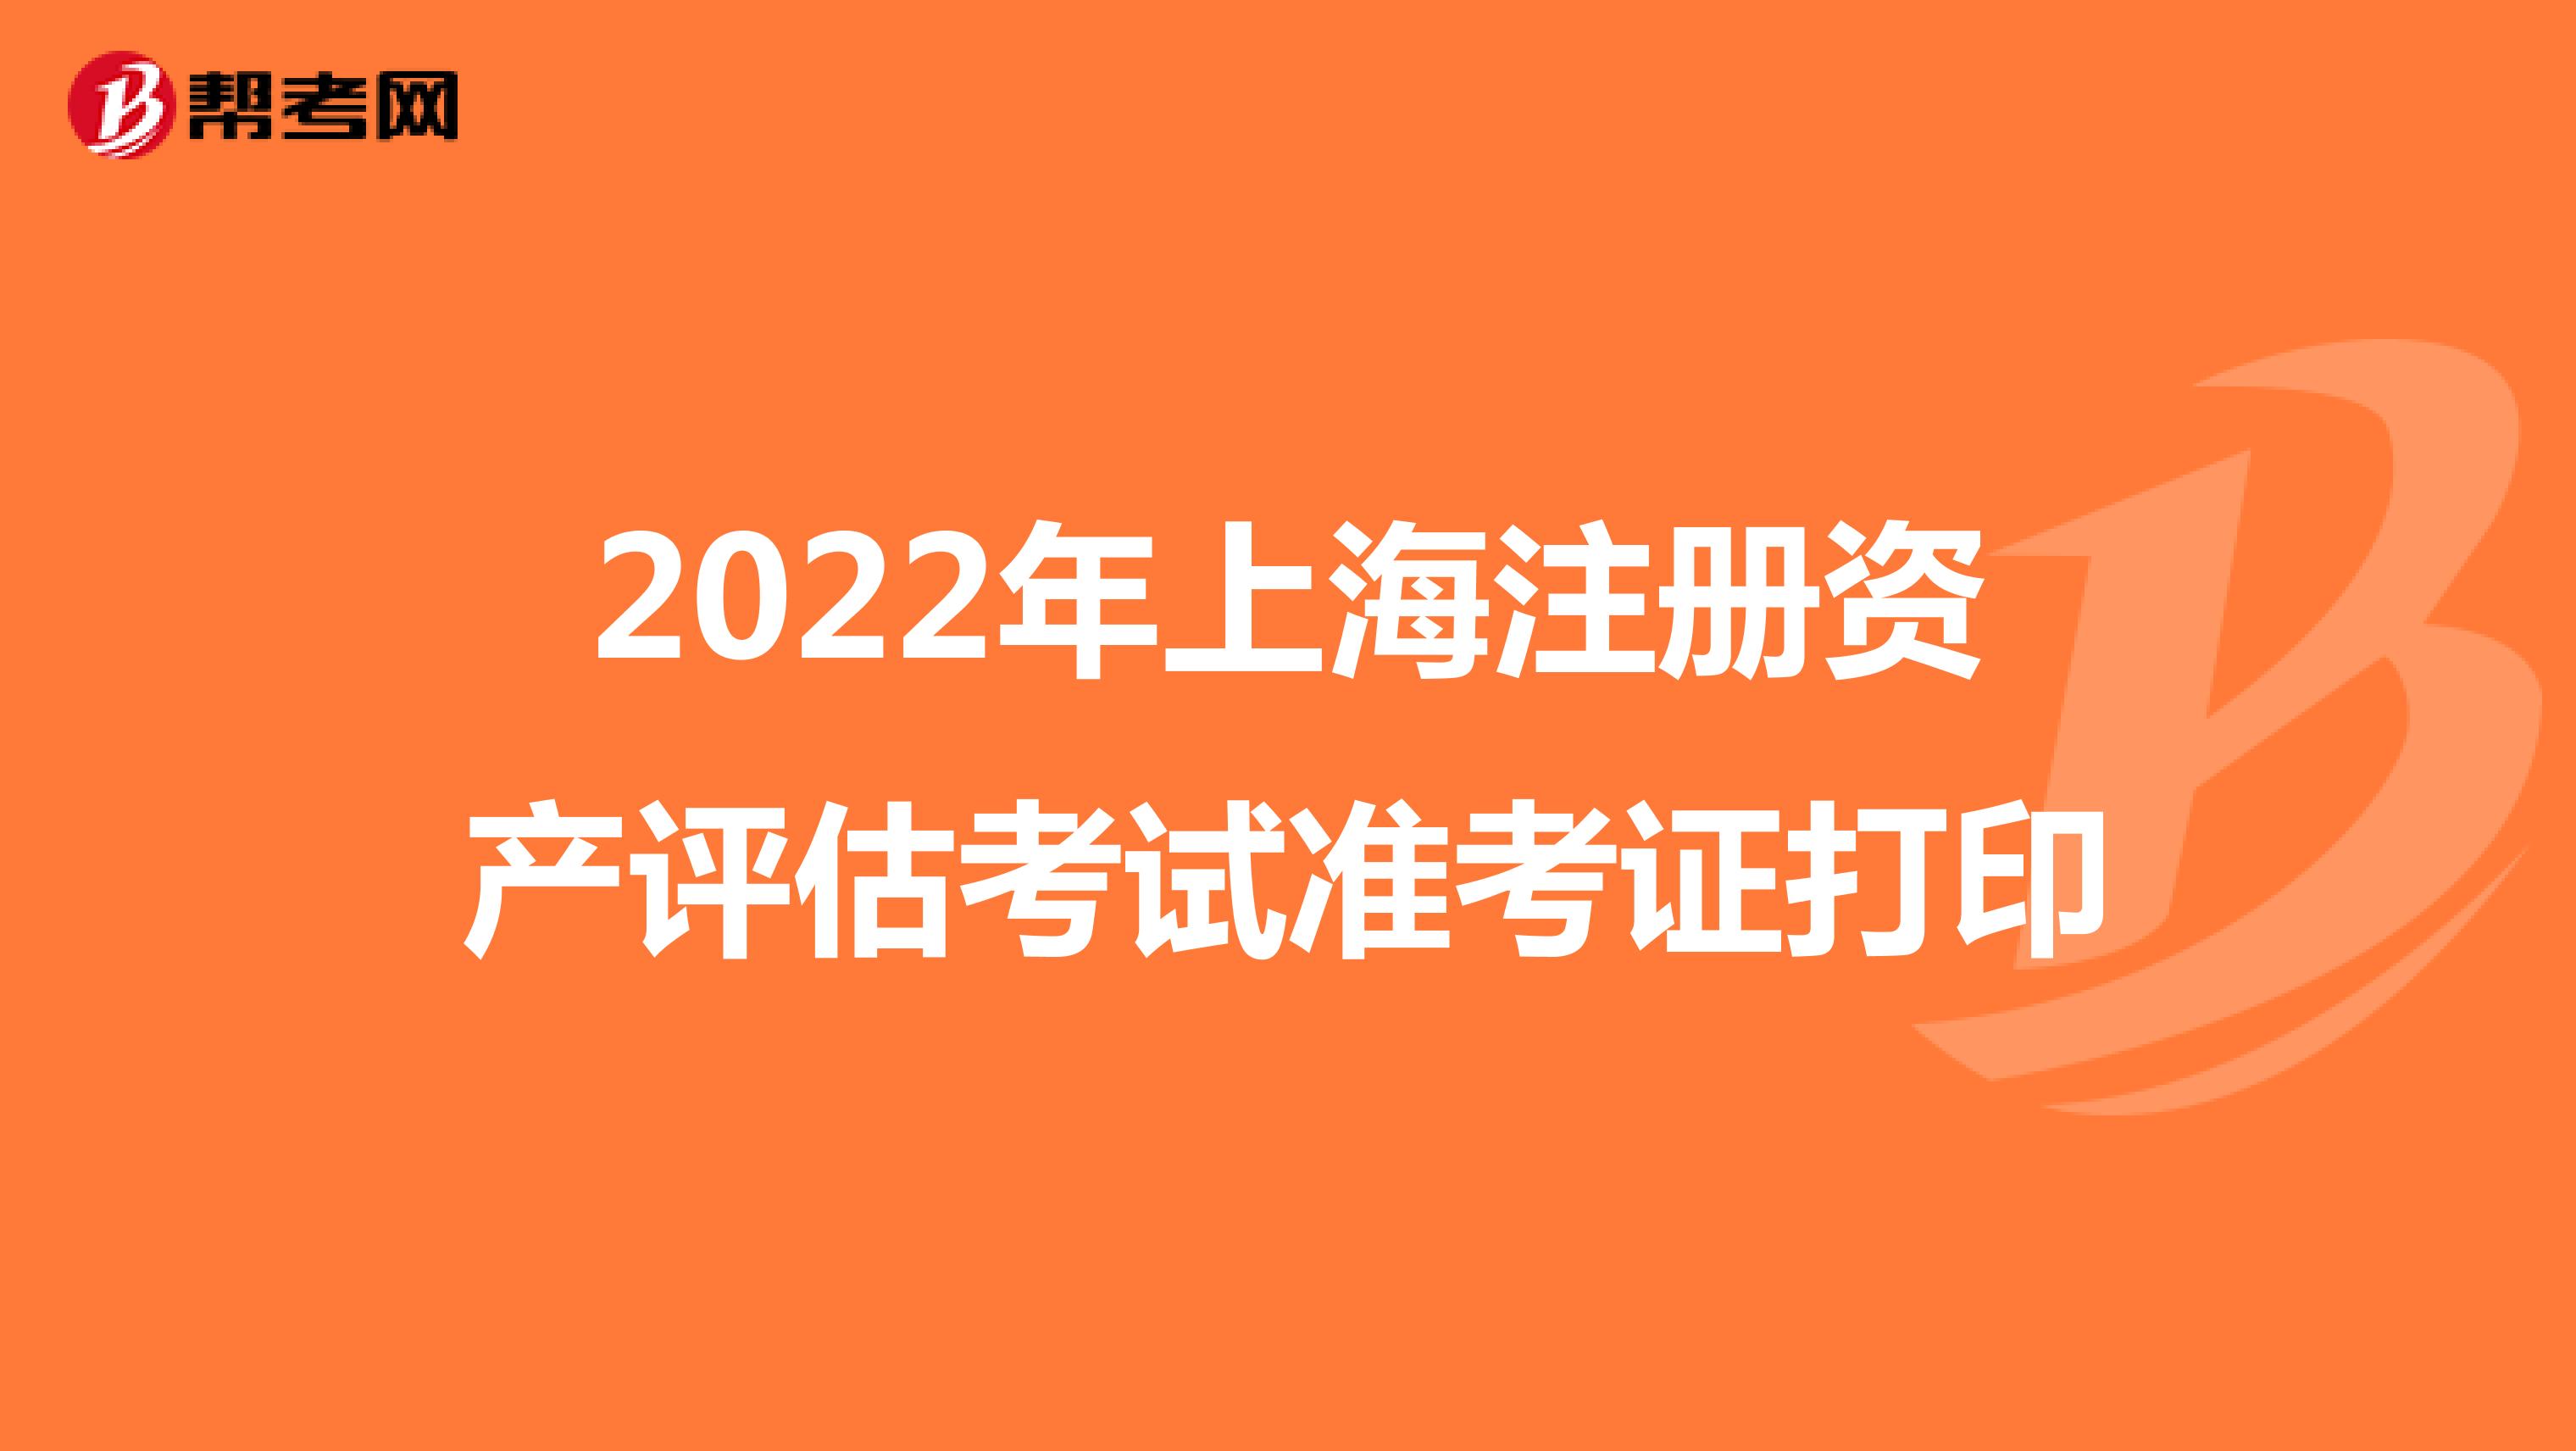 2022年上海注册资产评估考试准考证打印